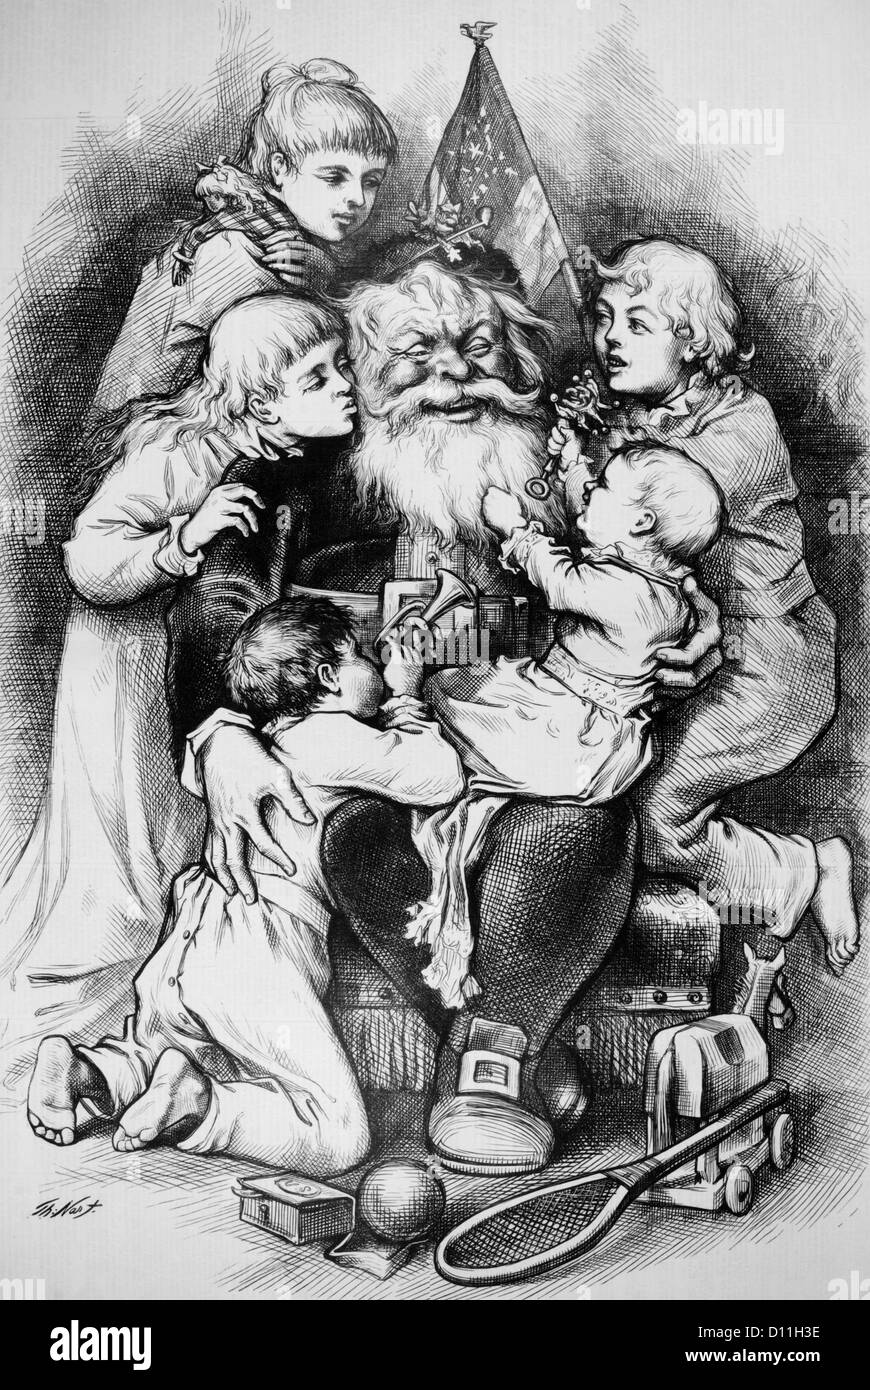 1870 1879 THOMAS NAST ILLUSTRATION JOYEUX NOËL PÈRE NOËL entouré de cinq enfants avec jouets CADEAUX DE NOËL Banque D'Images